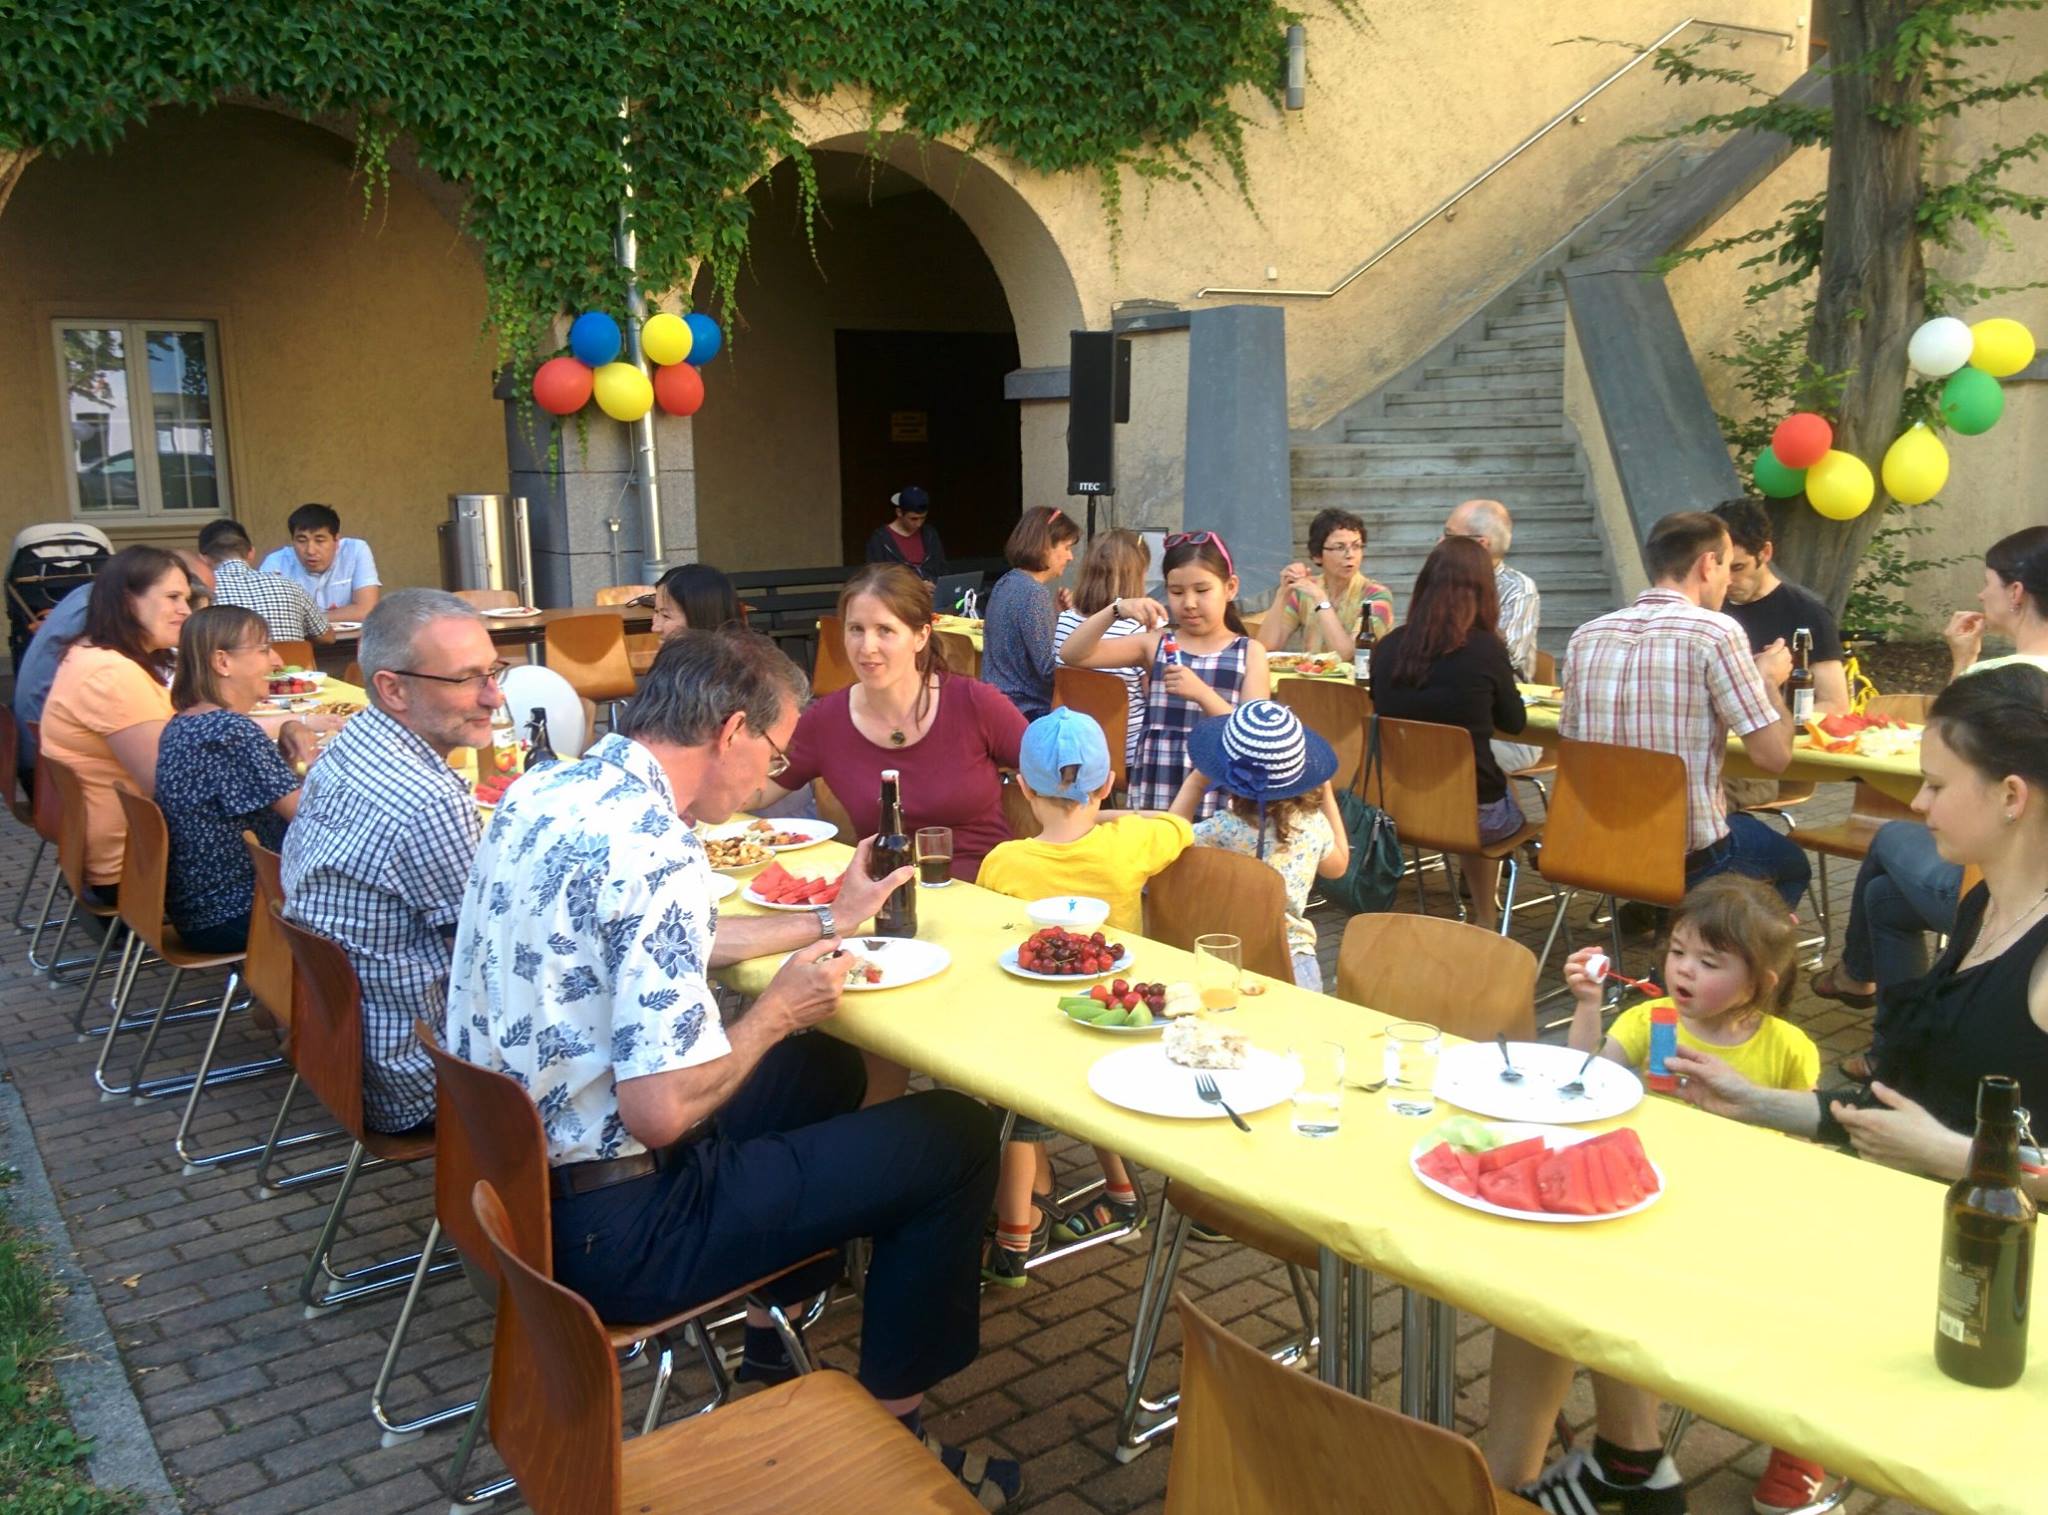 Foto: Tischreihen im Hauptbibliotheks Innenhof. Gäste sitzen gemeinsam bei essen und trinken. Verabschiedungsfeier von Hr. Prof. Beier.